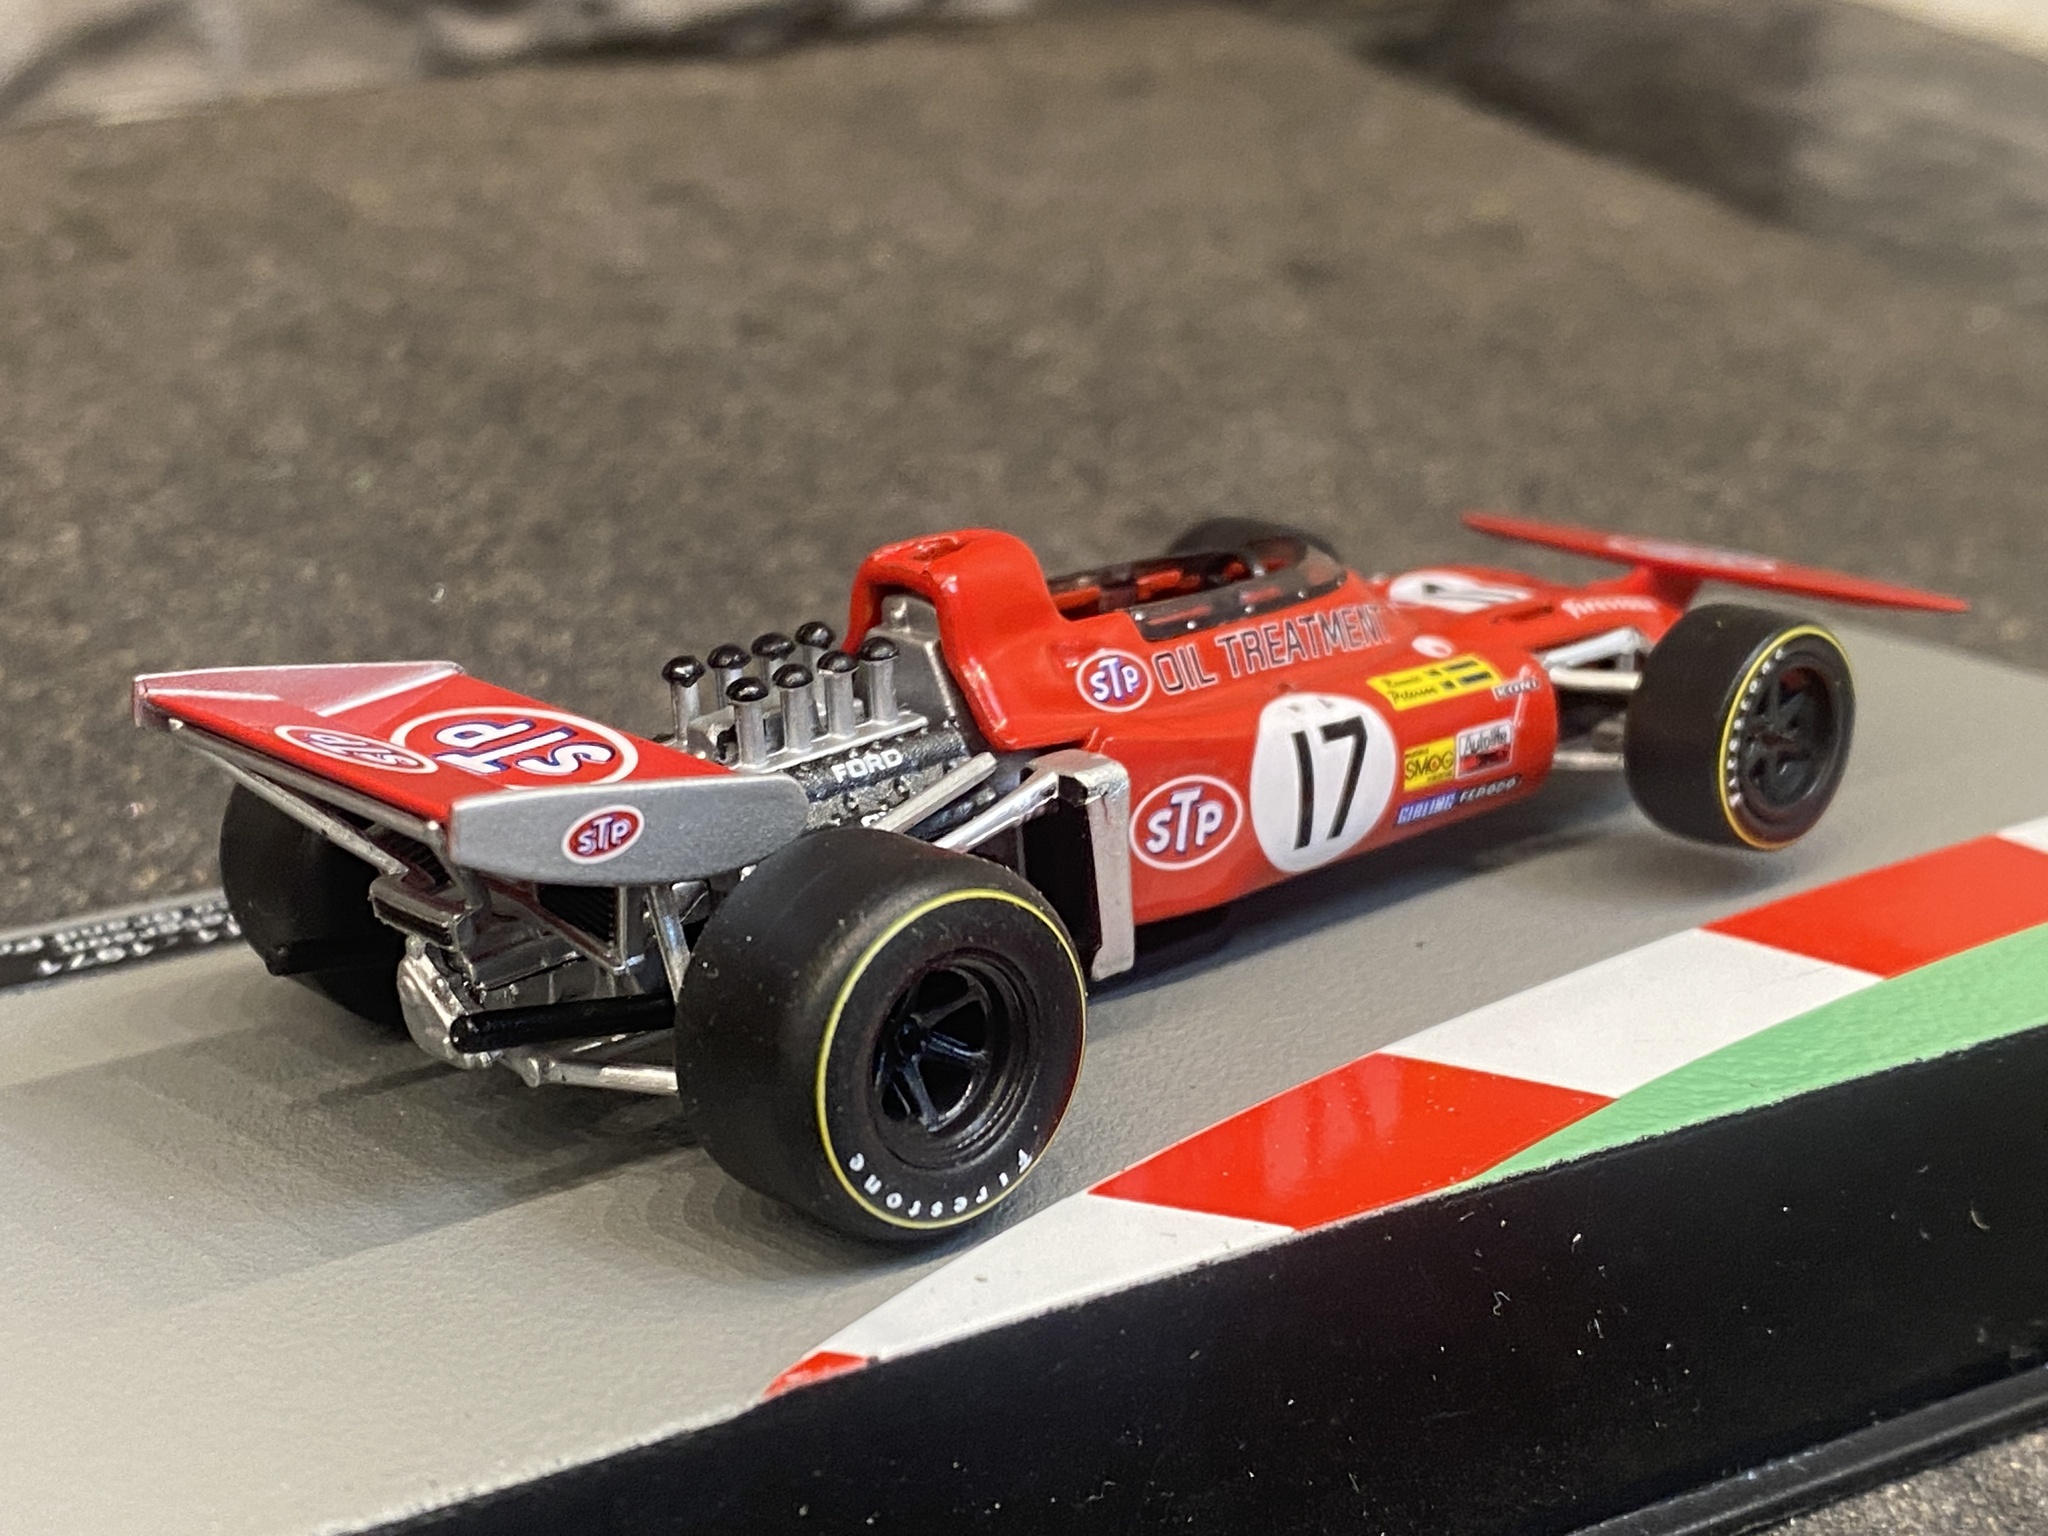 Skala 1/43 Formula 1, March 711 - 1971 - Ronnie Peterson - Monaco Grand Prix 71'